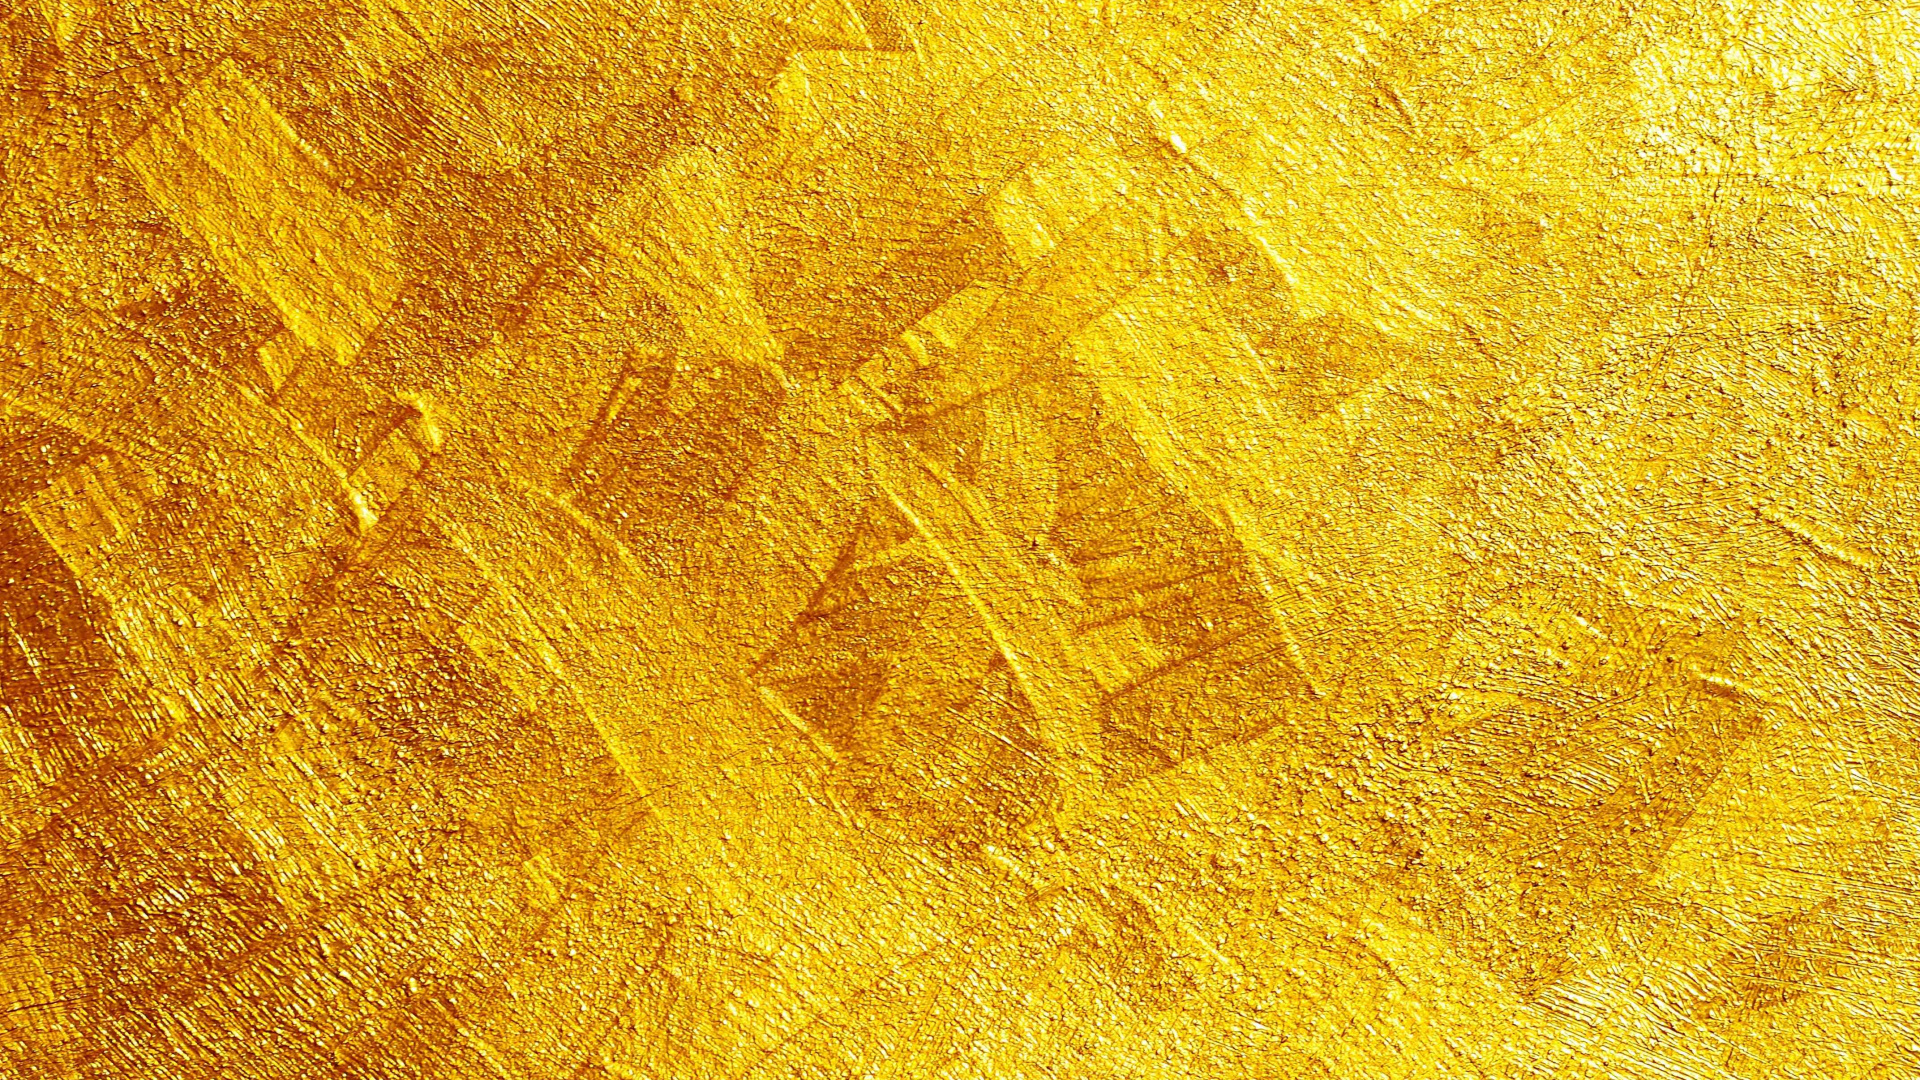 Alfombra Amarilla y Marrón. Wallpaper in 1920x1080 Resolution